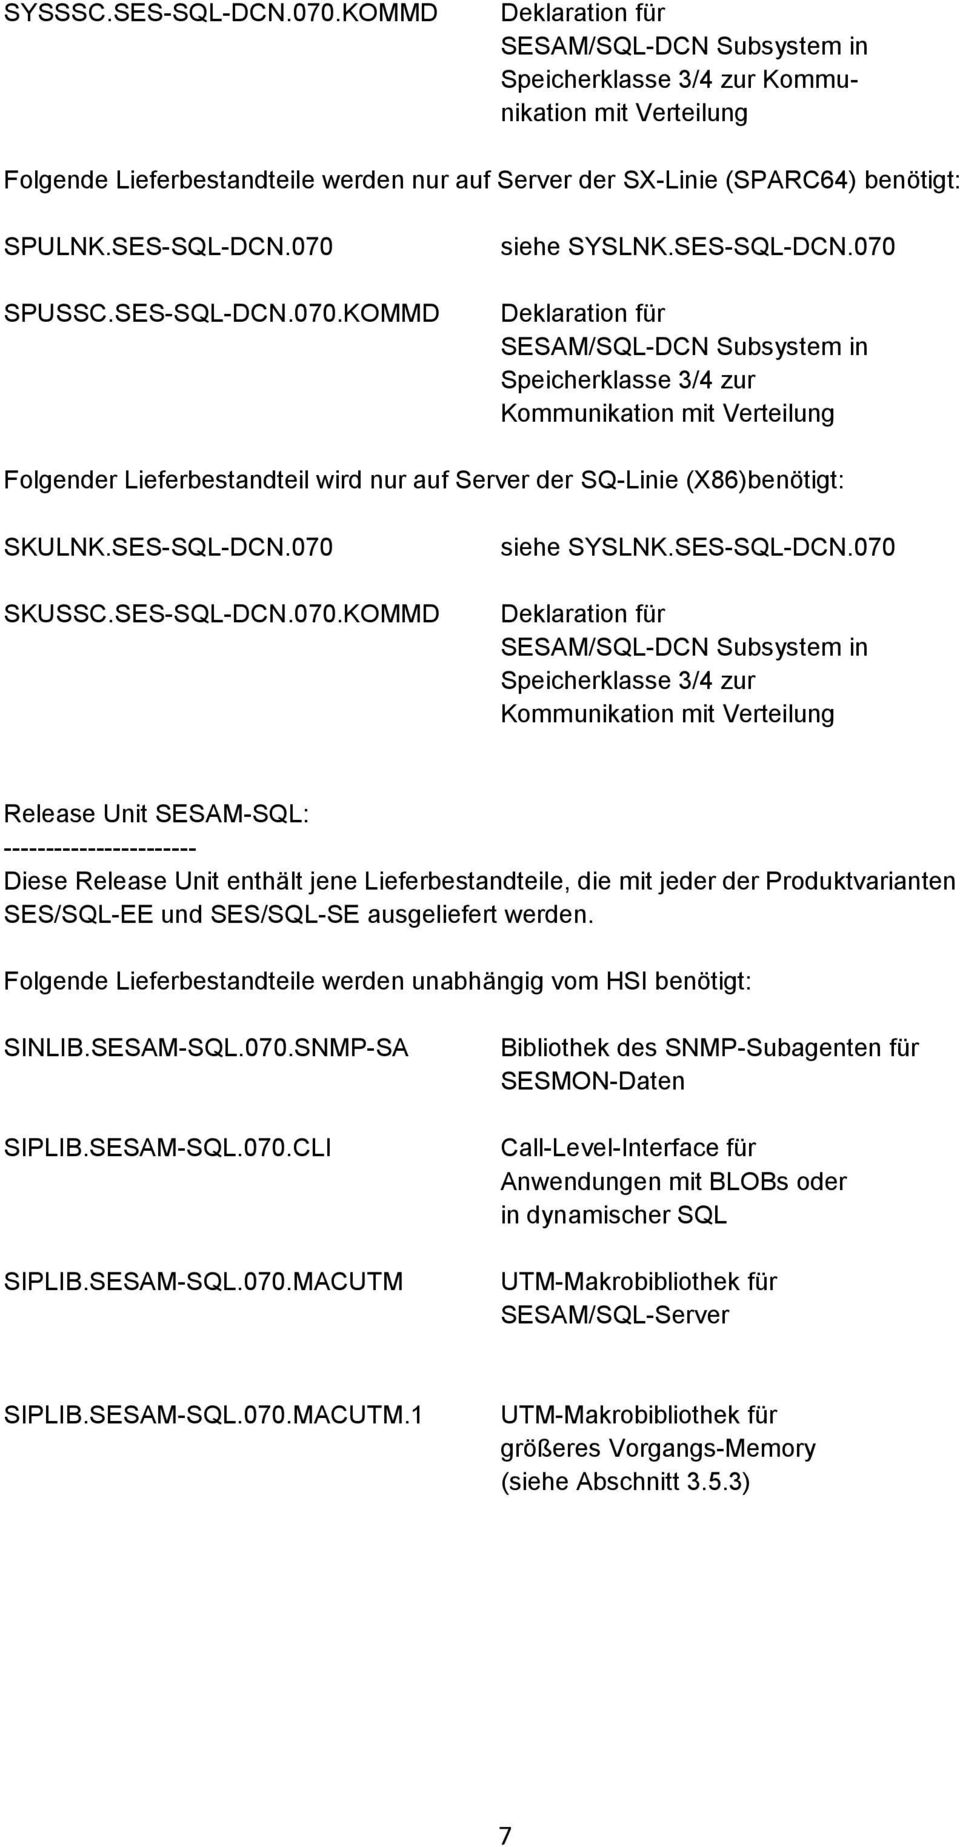 SES-SQL-DCN.070 SPUSSC.SES-SQL-DCN.070.KOMMD siehe SYSLNK.SES-SQL-DCN.070 Deklaration für SESAM/SQL-DCN Subsystem in Speicherklasse 3/4 zur Kommunikation mit Verteilung Folgender Lieferbestandteil wird nur auf Server der SQ-Linie (X86)benötigt: SKULNK.